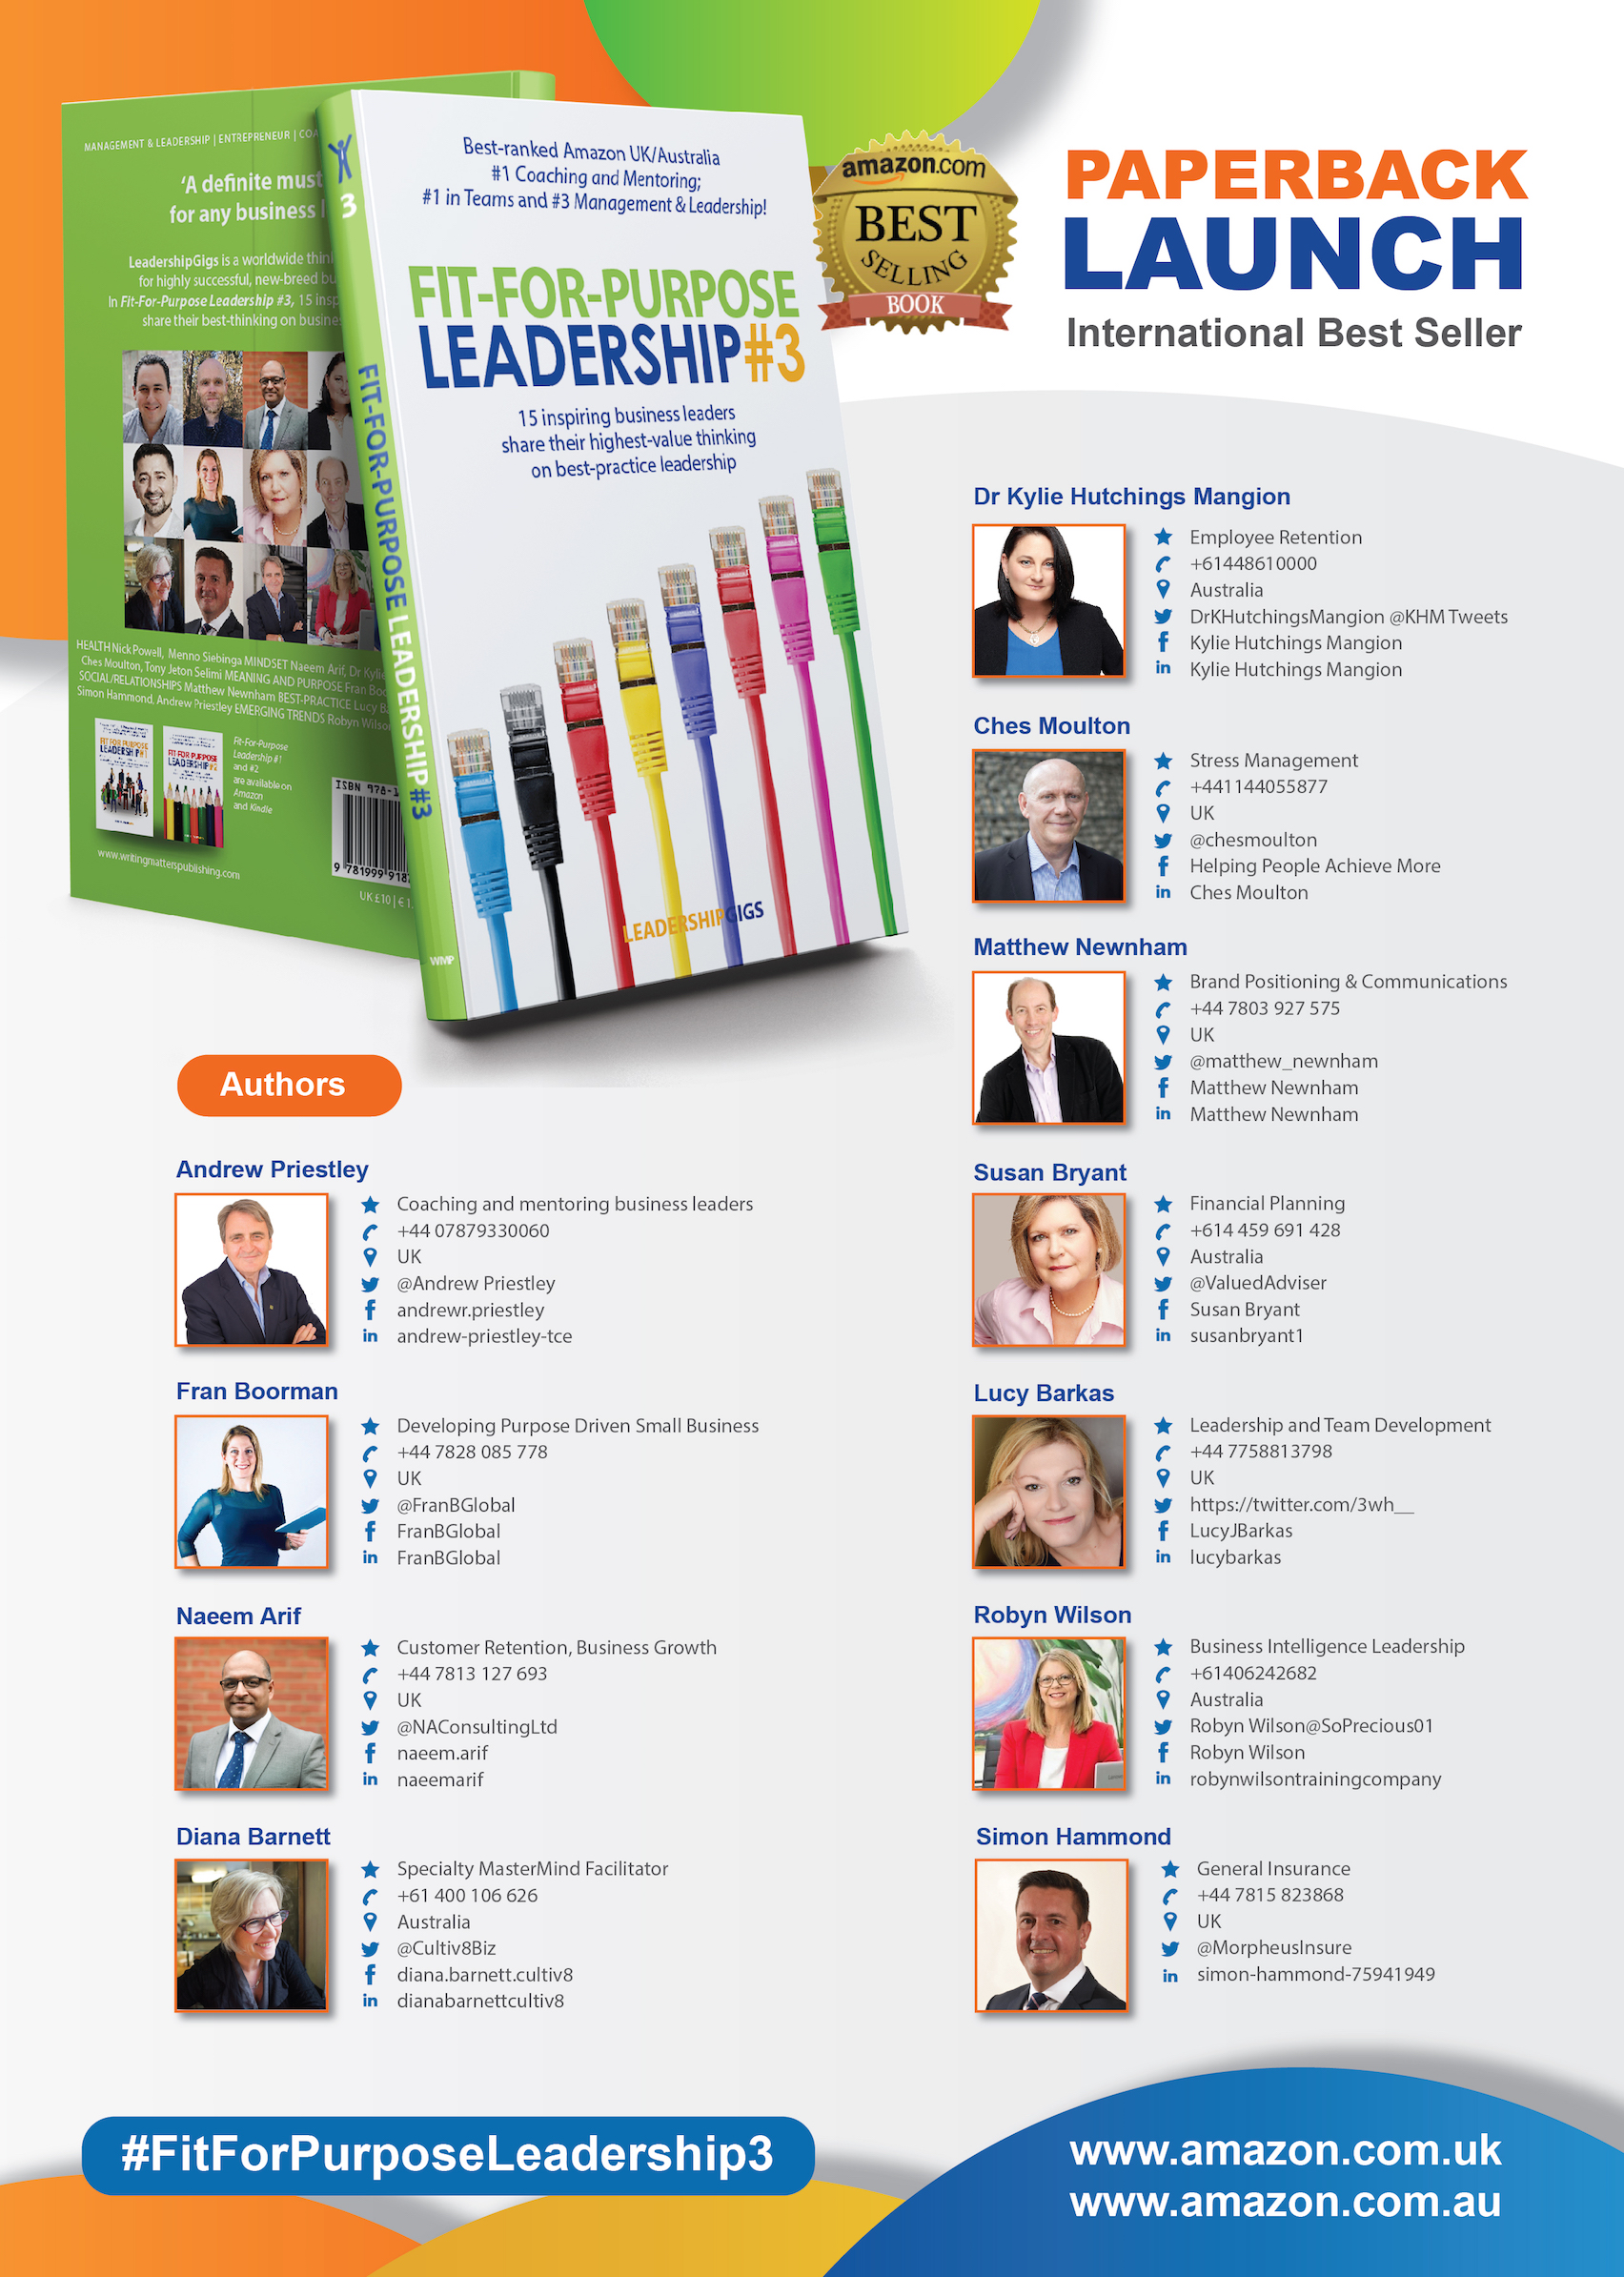 15 international Leaders - Paperback Release